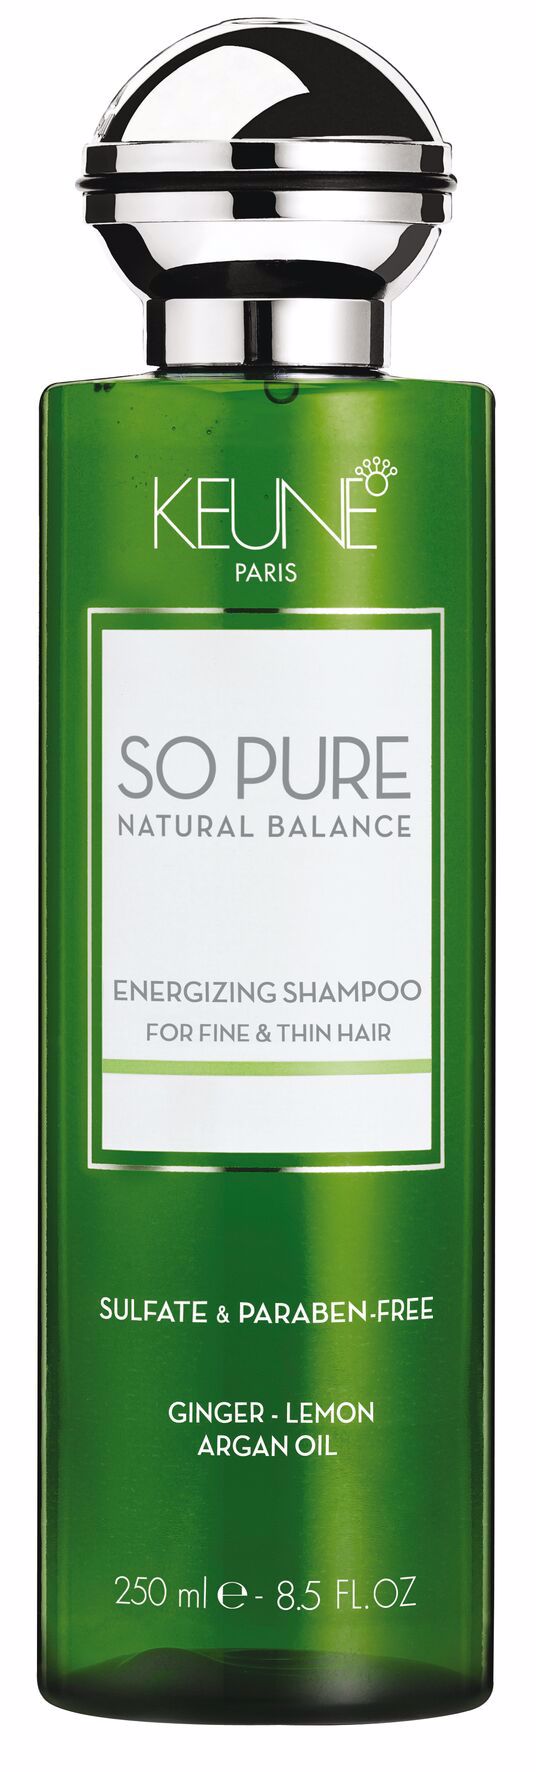 SP Energizing Shampoo, 250ml